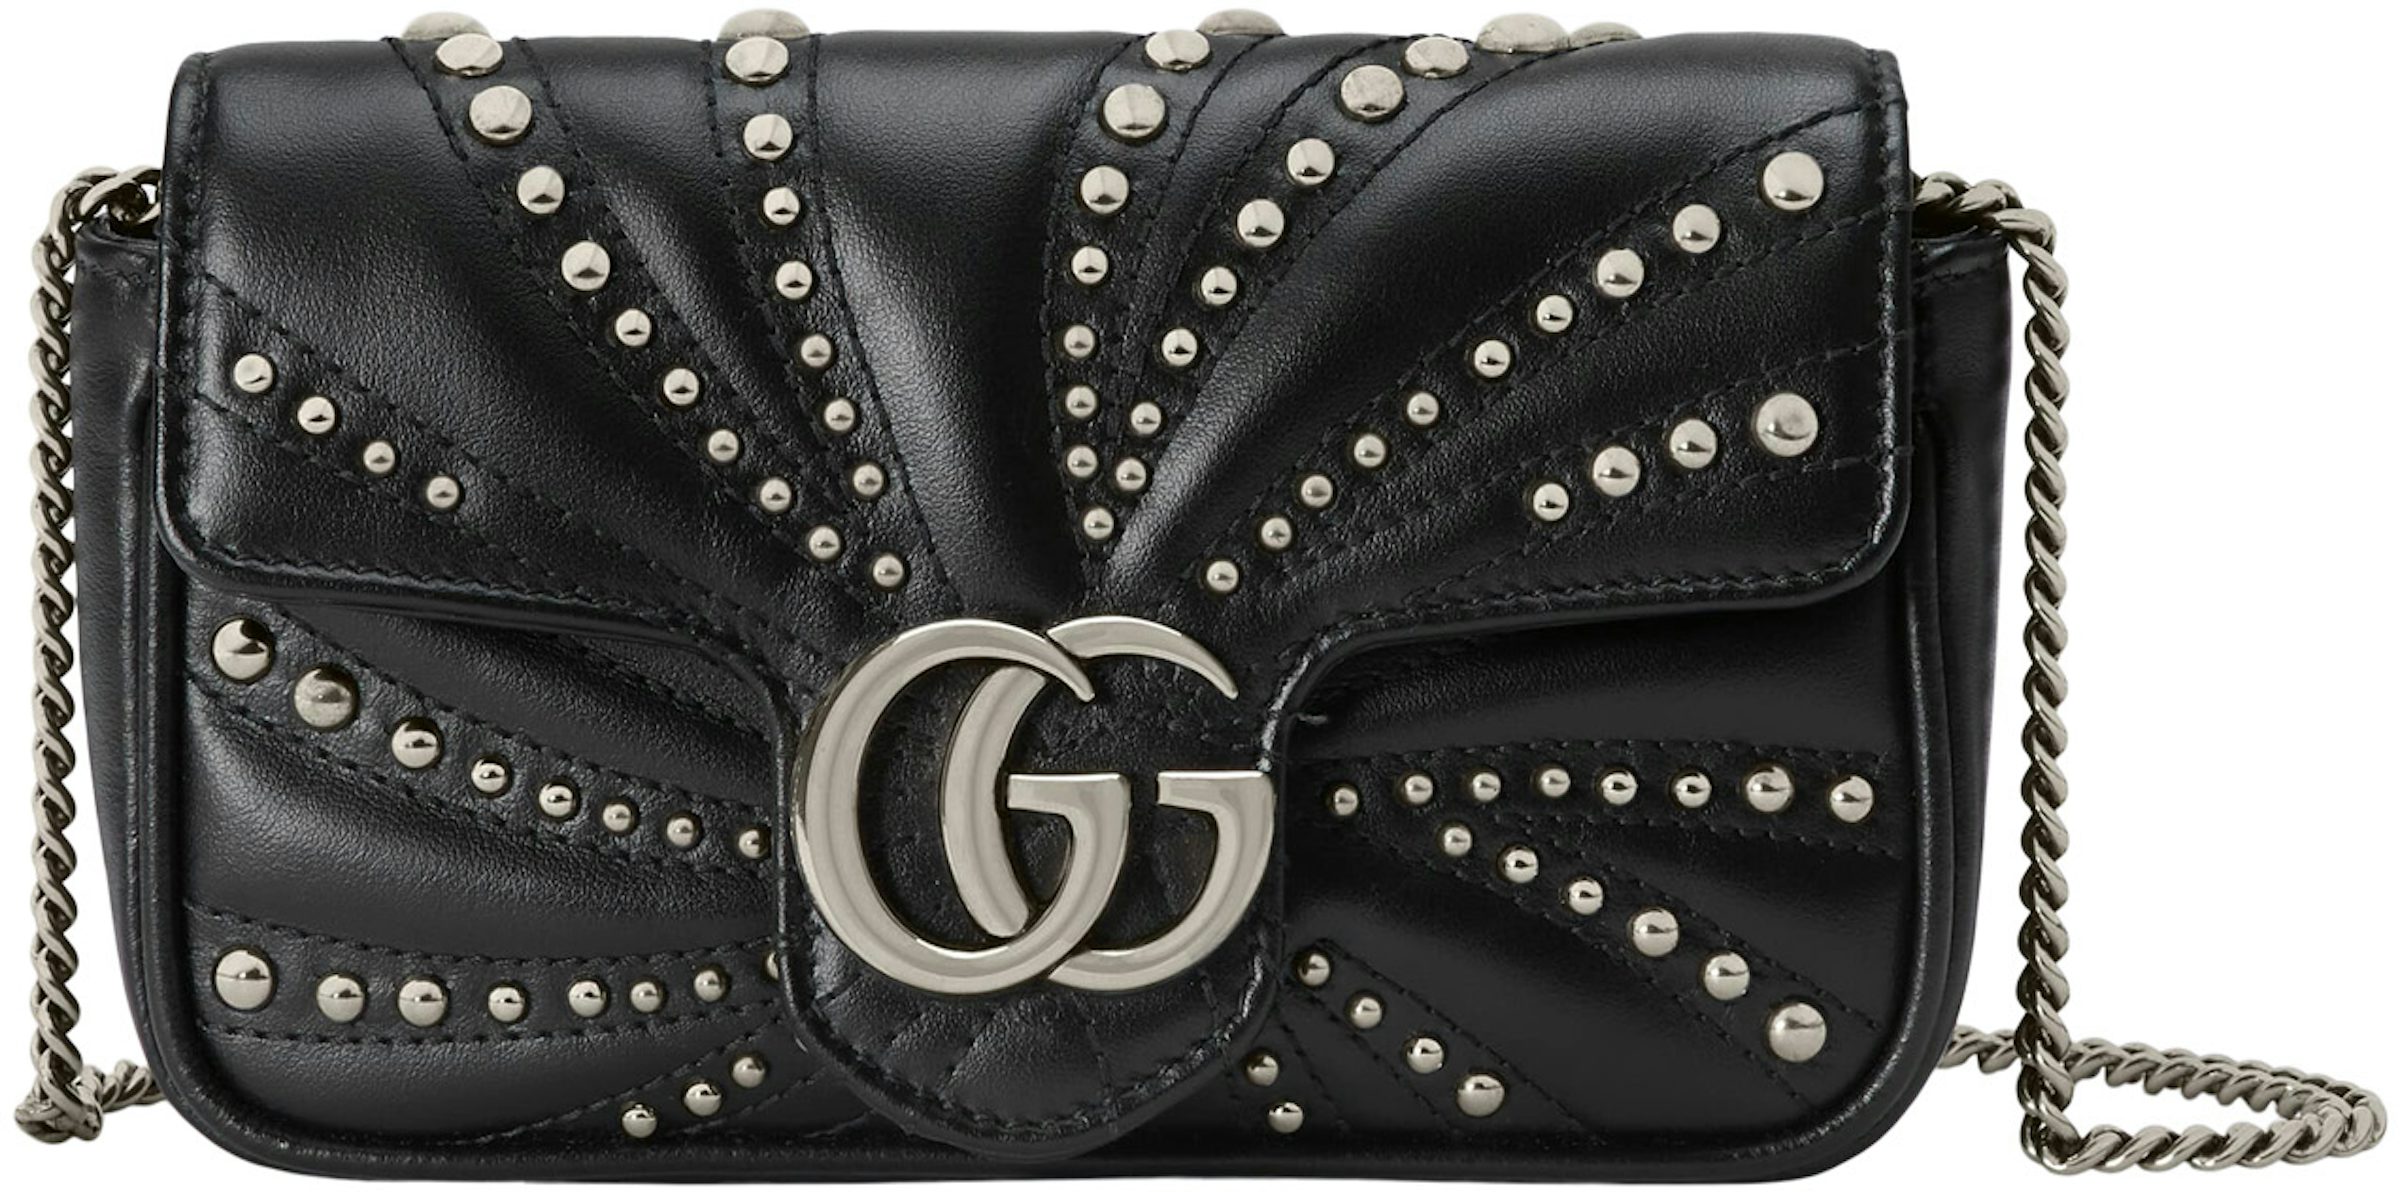 Gucci GG Marmont Super Mini Crossbody Bag - Black